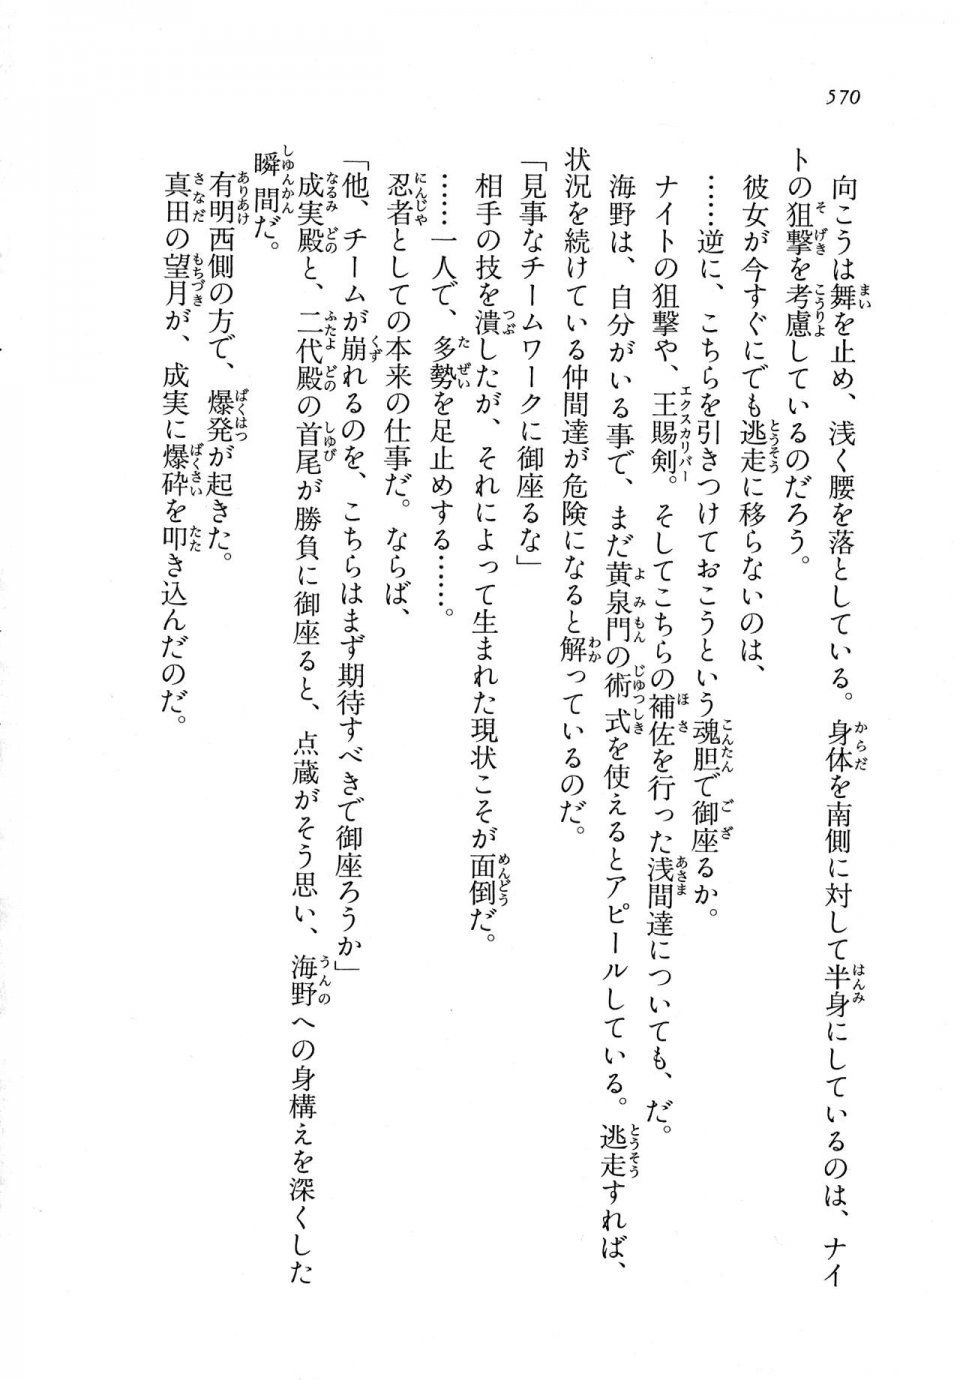 Kyoukai Senjou no Horizon LN Vol 11(5A) - Photo #570